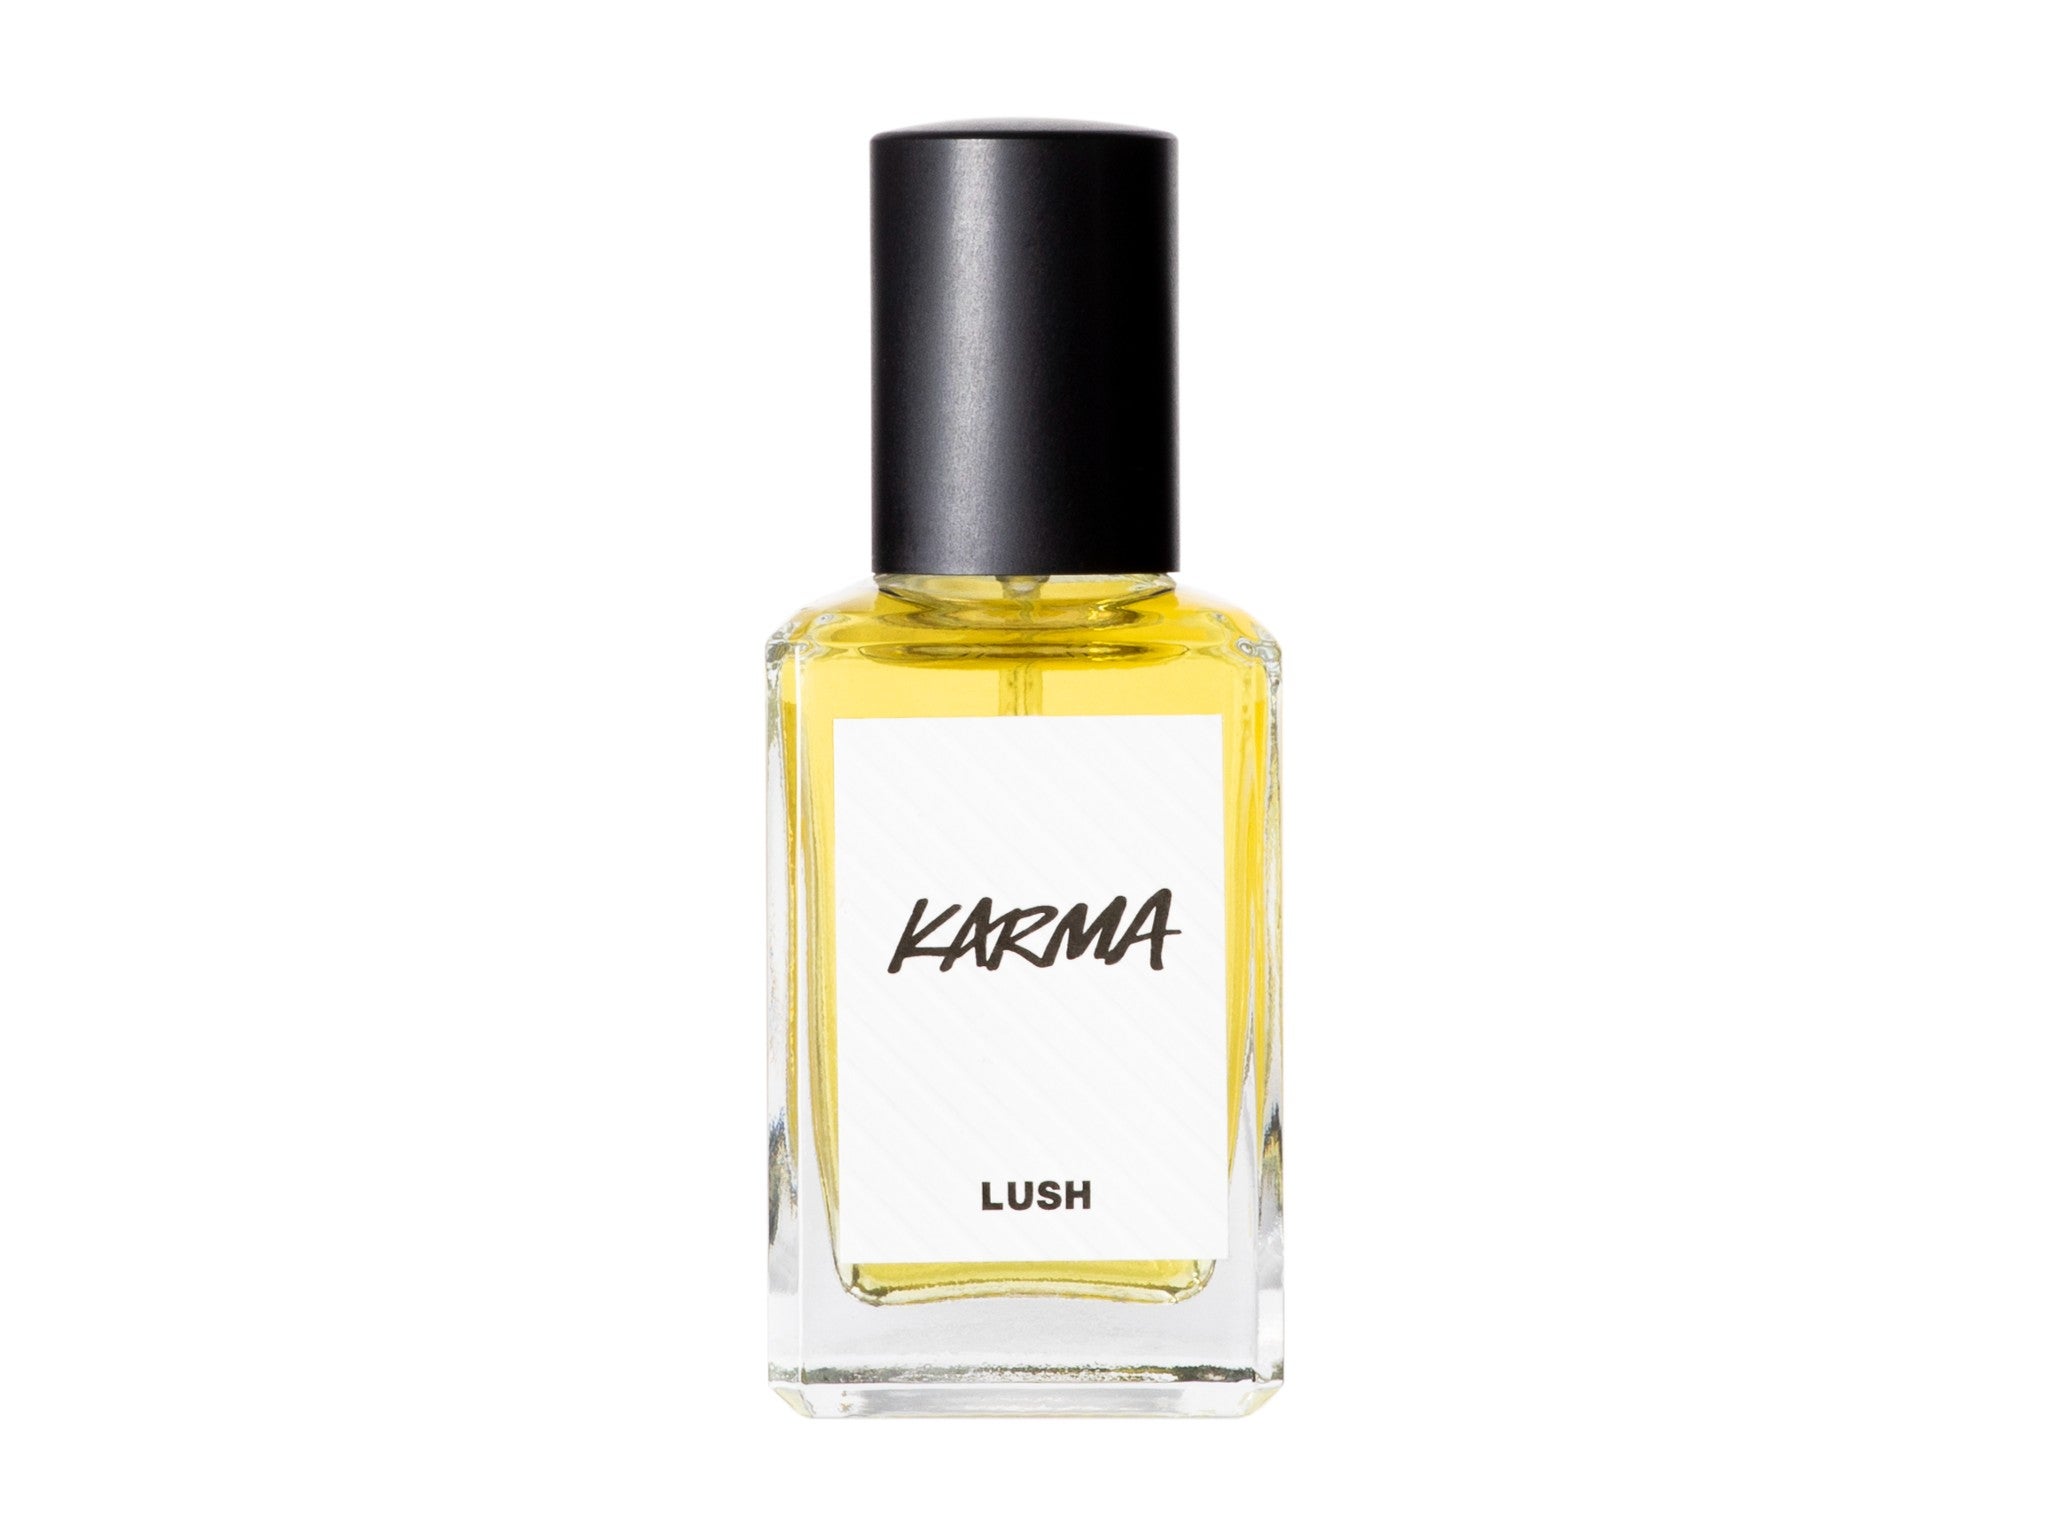 Karma perfume, 30ml indybest.jpeg